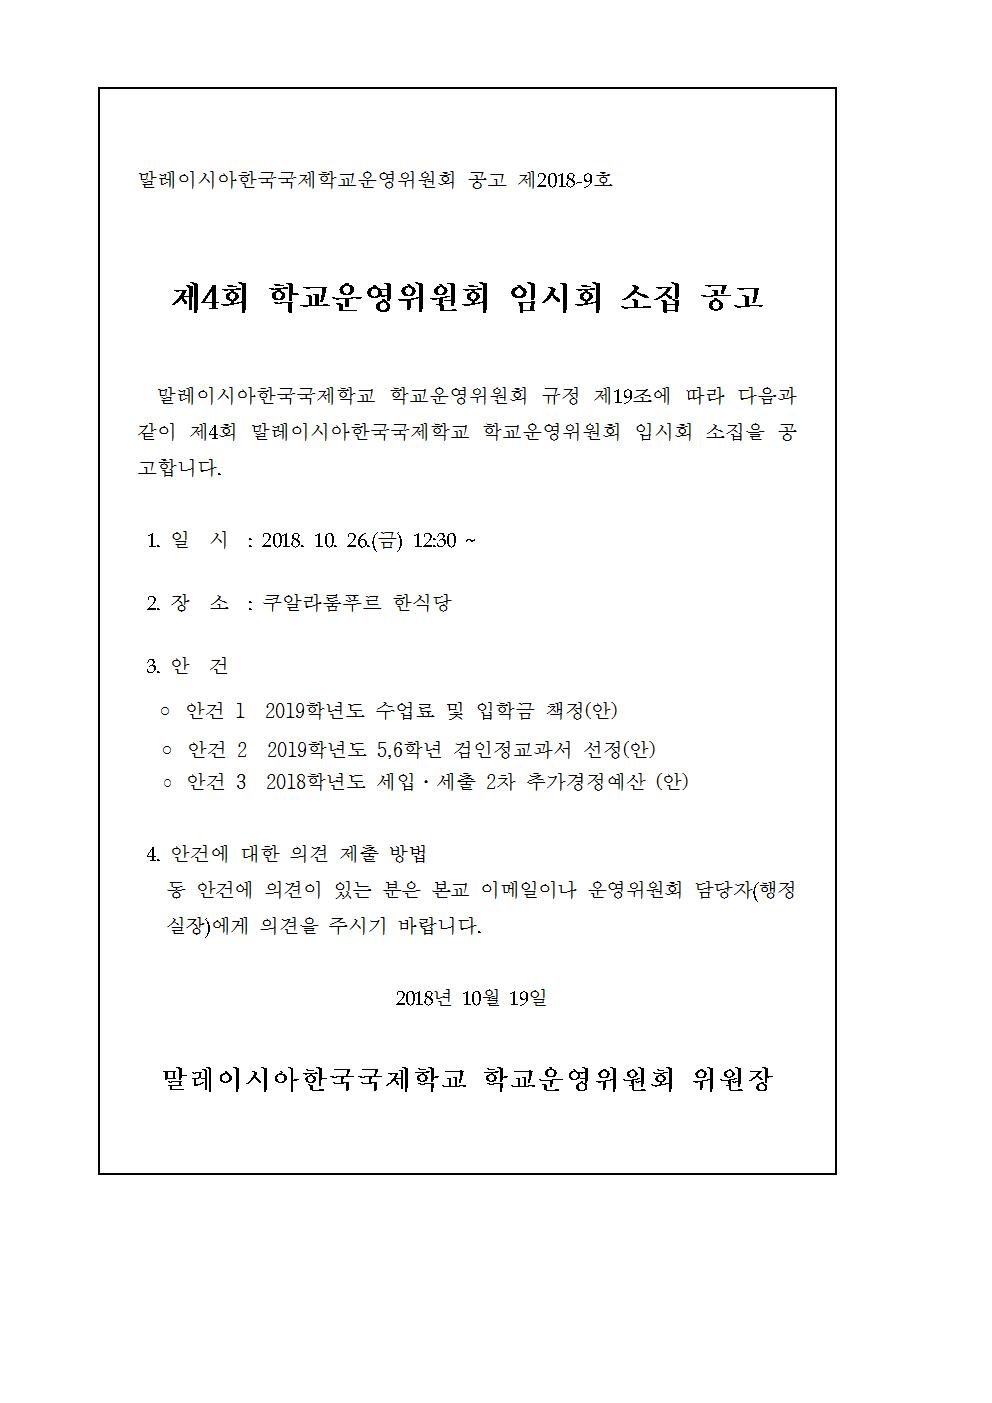 2018-4운영위원회 임시회 개최 알림_공고문.jpg